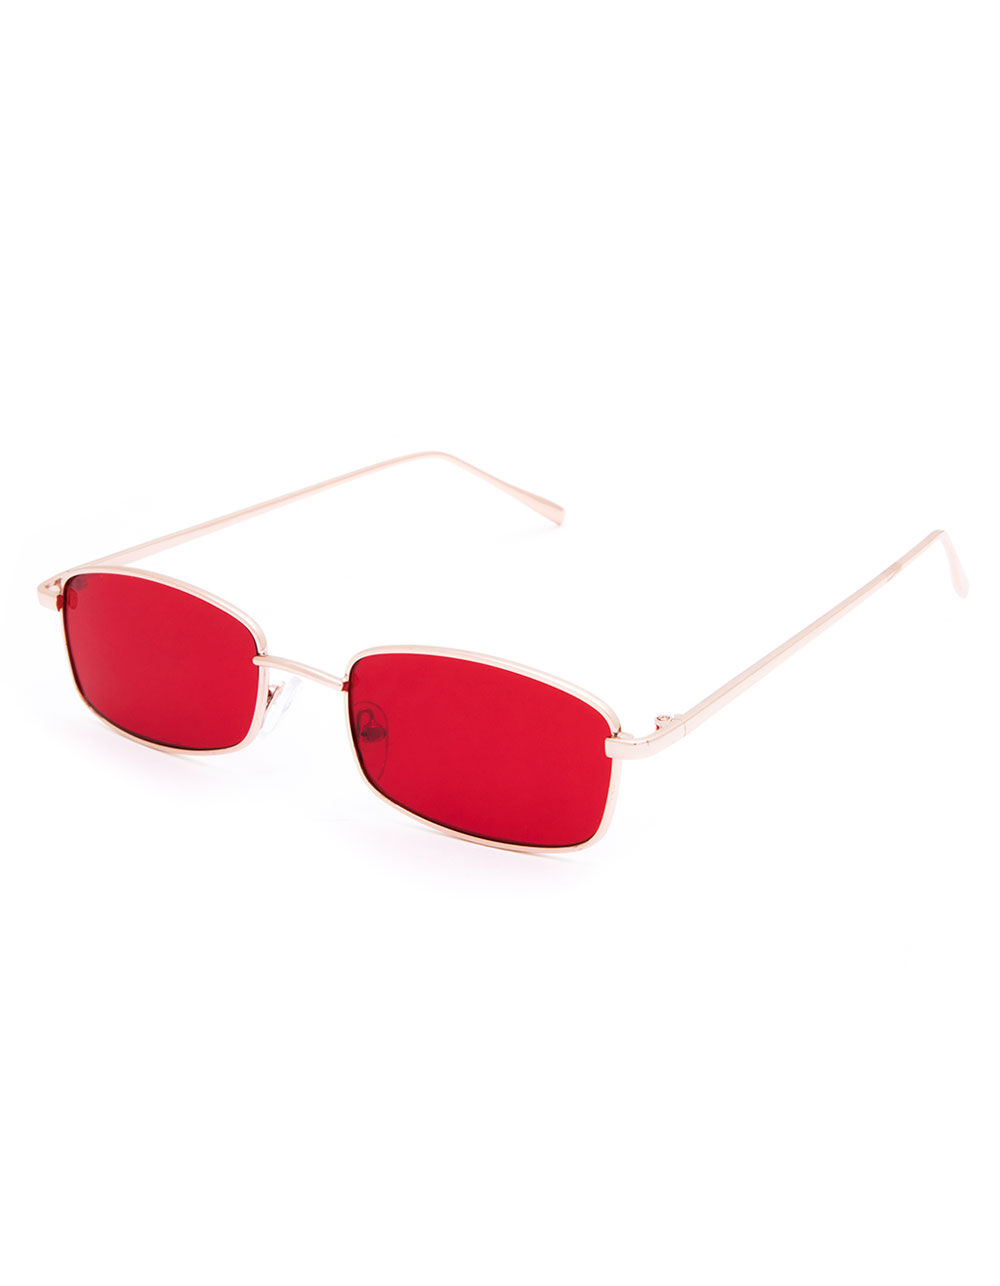 FULL TILT Breezy Red Square Sunglasses